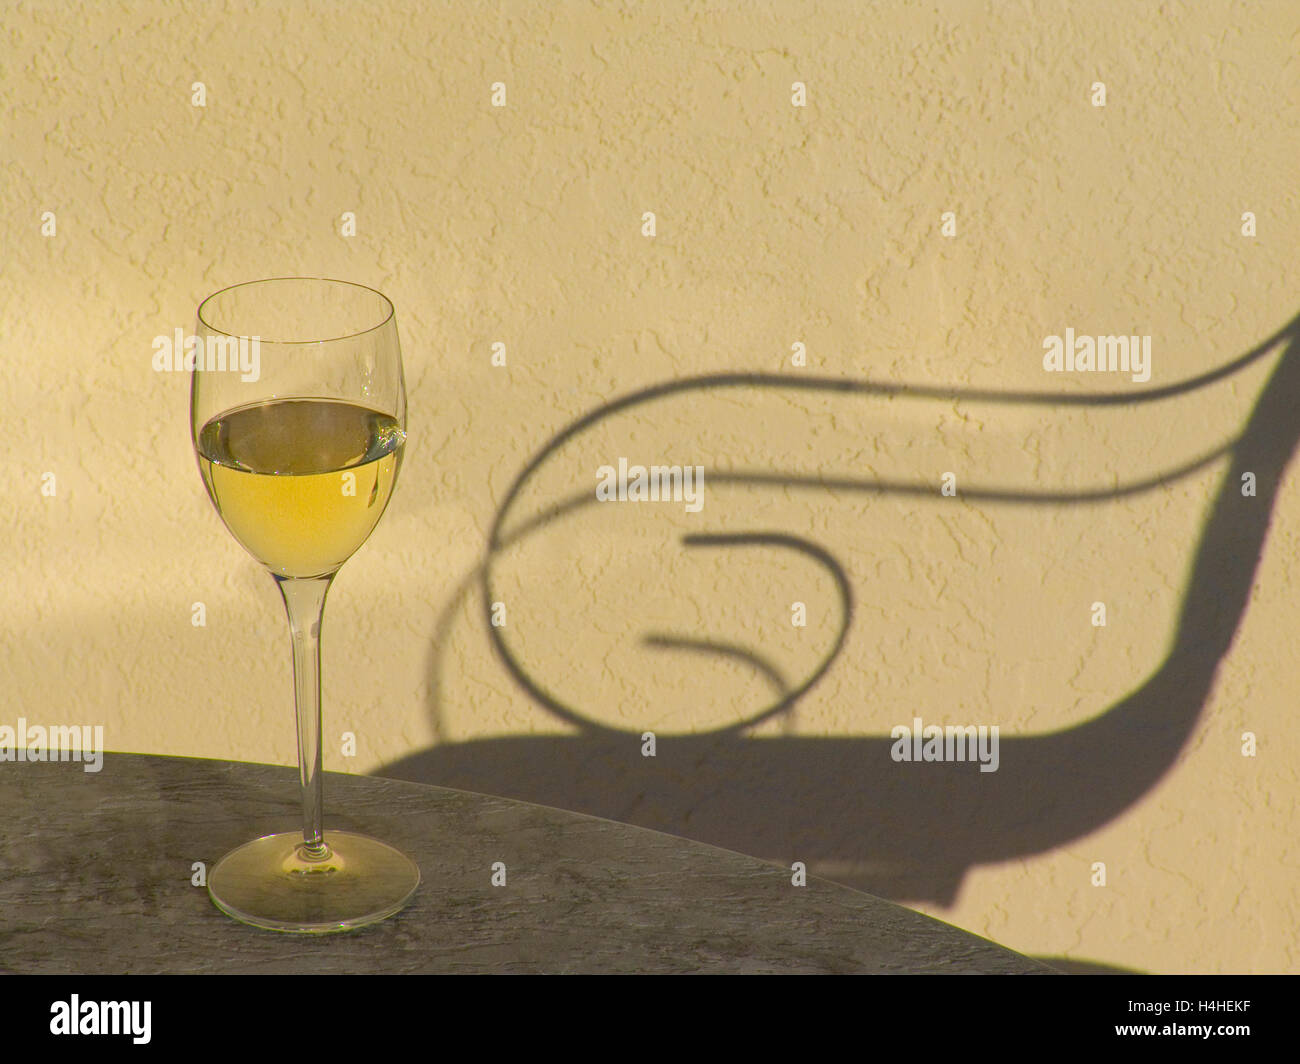 VINO BIANCO TRAMONTO VACANZA SEDIA ALL'APERTO RELAX bicchiere di vino bianco sul tavolo soleggiato terrazzo all'aperto con ombra di sdraio all'aperto sedia al tramonto Foto Stock